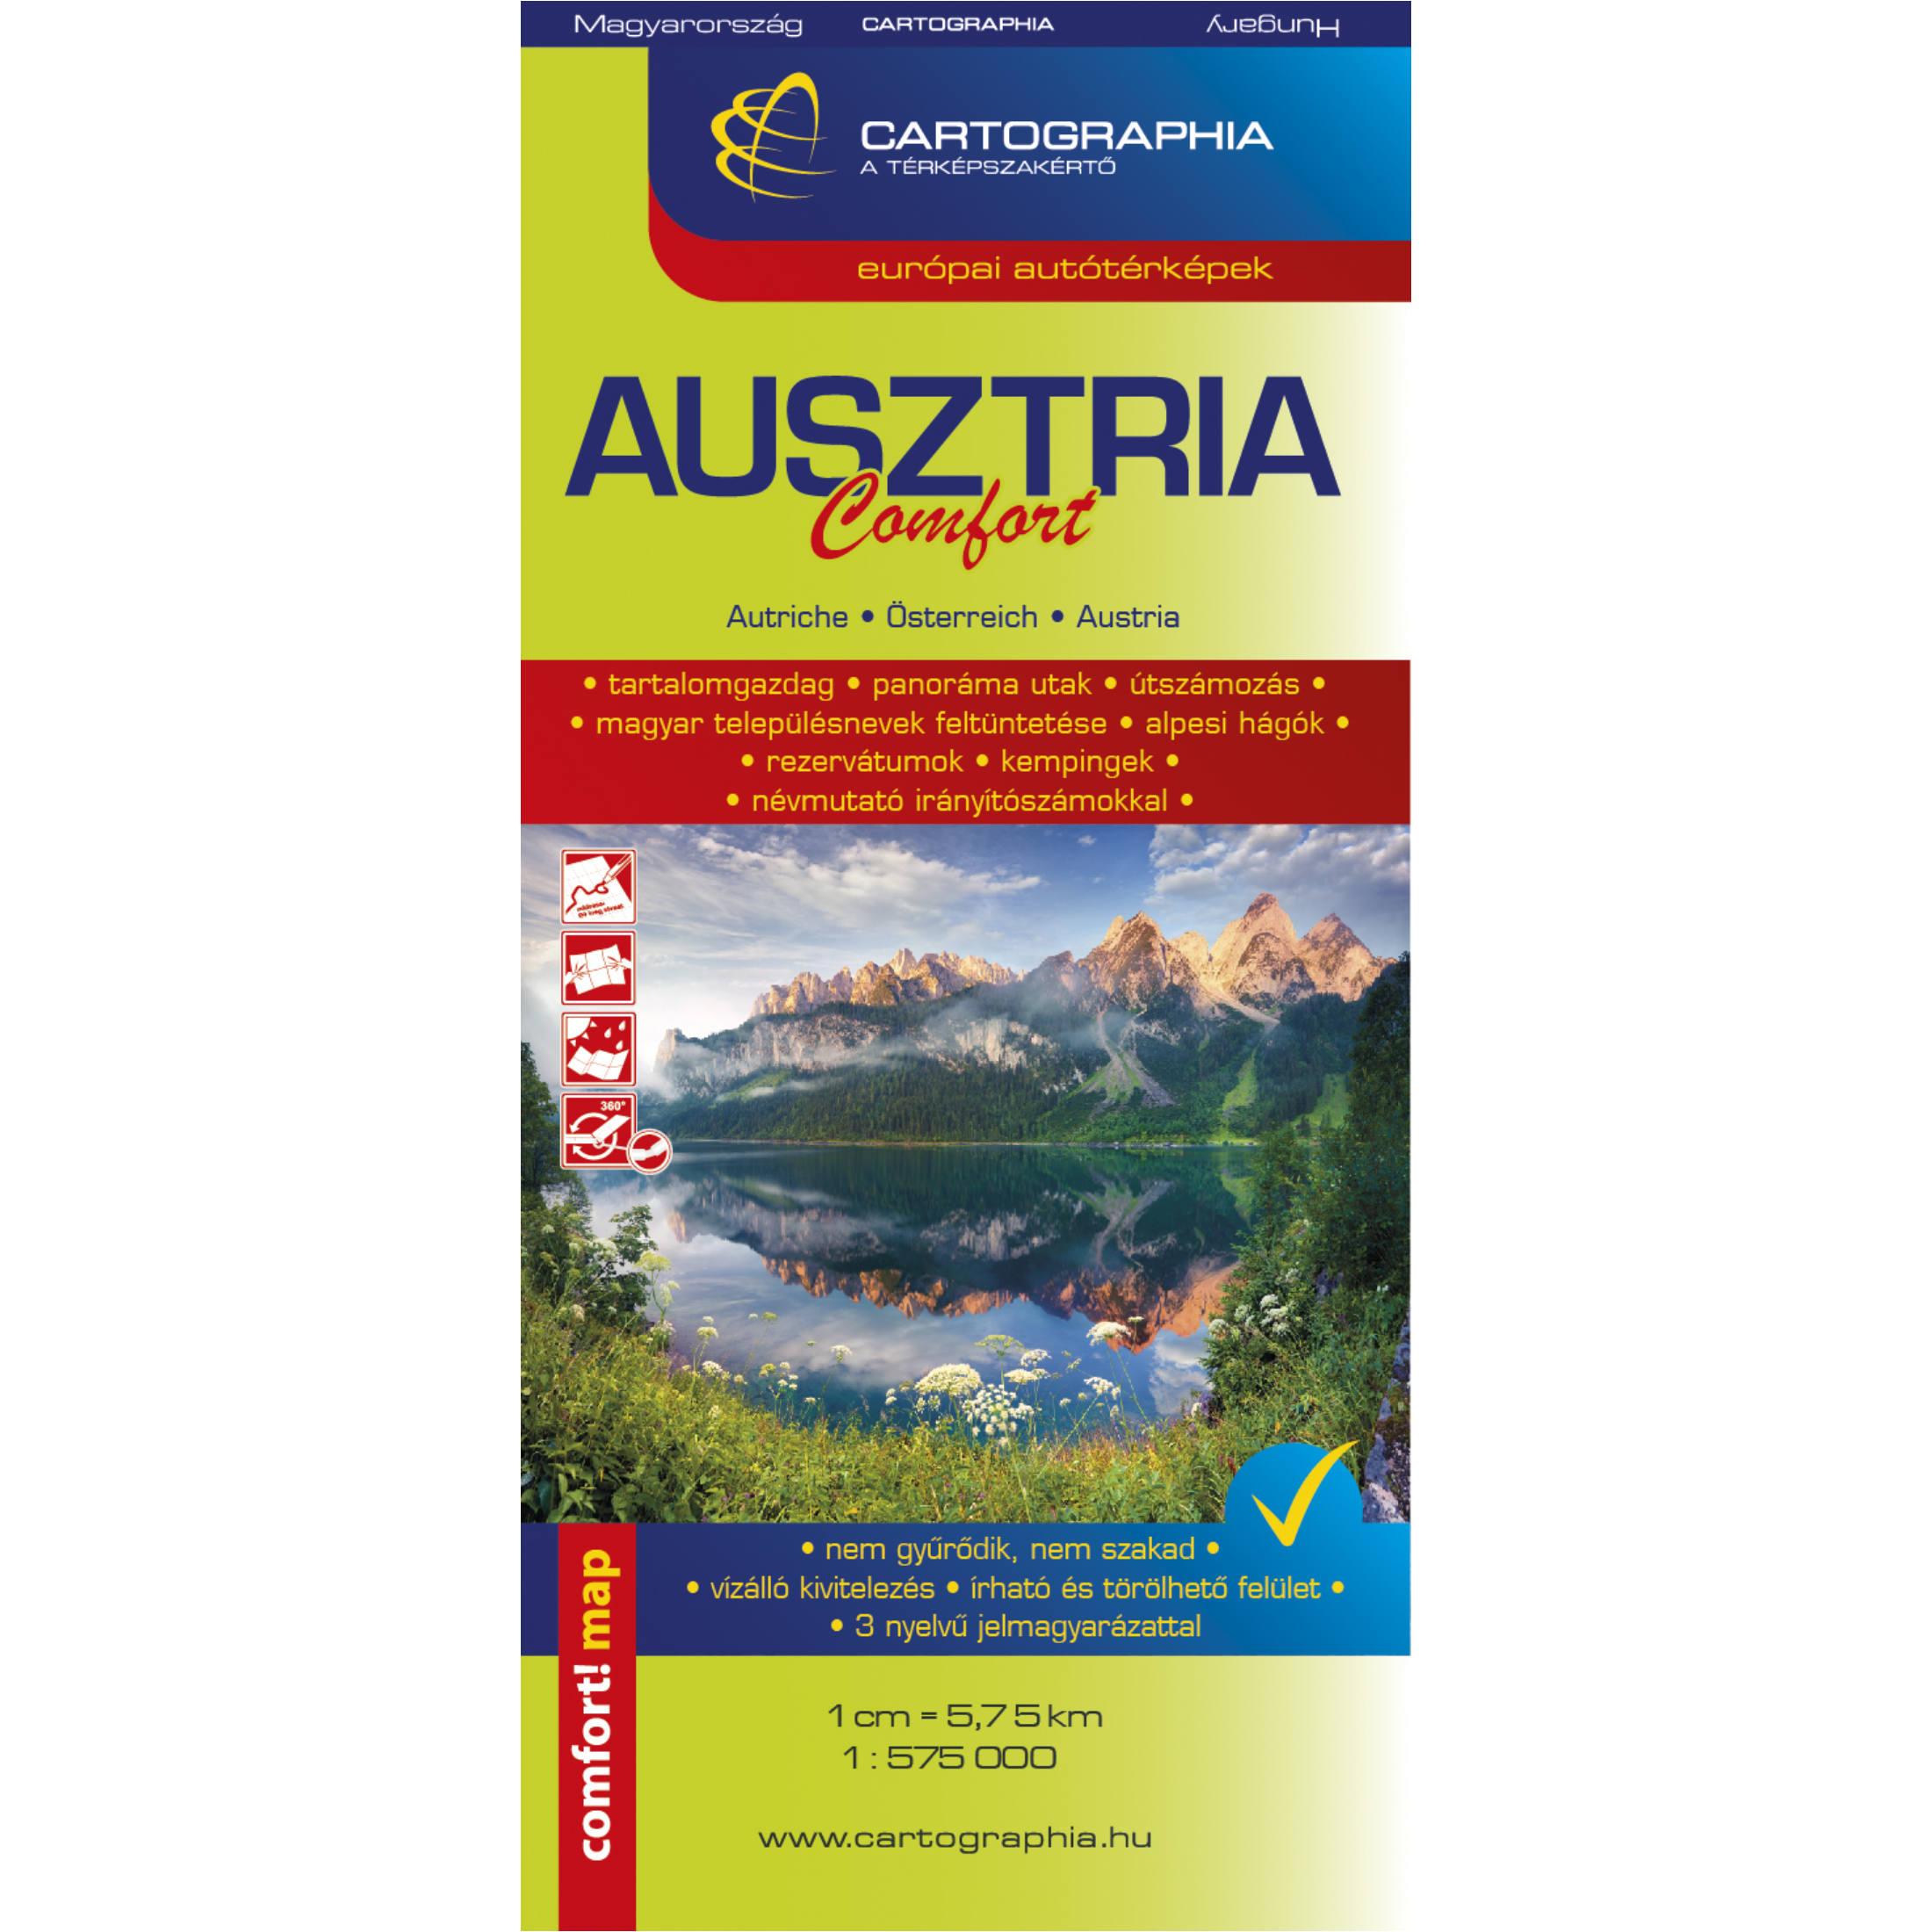 Vezi detalii pentru Ausztria Comfort laminalt terkep 1:575000 | 